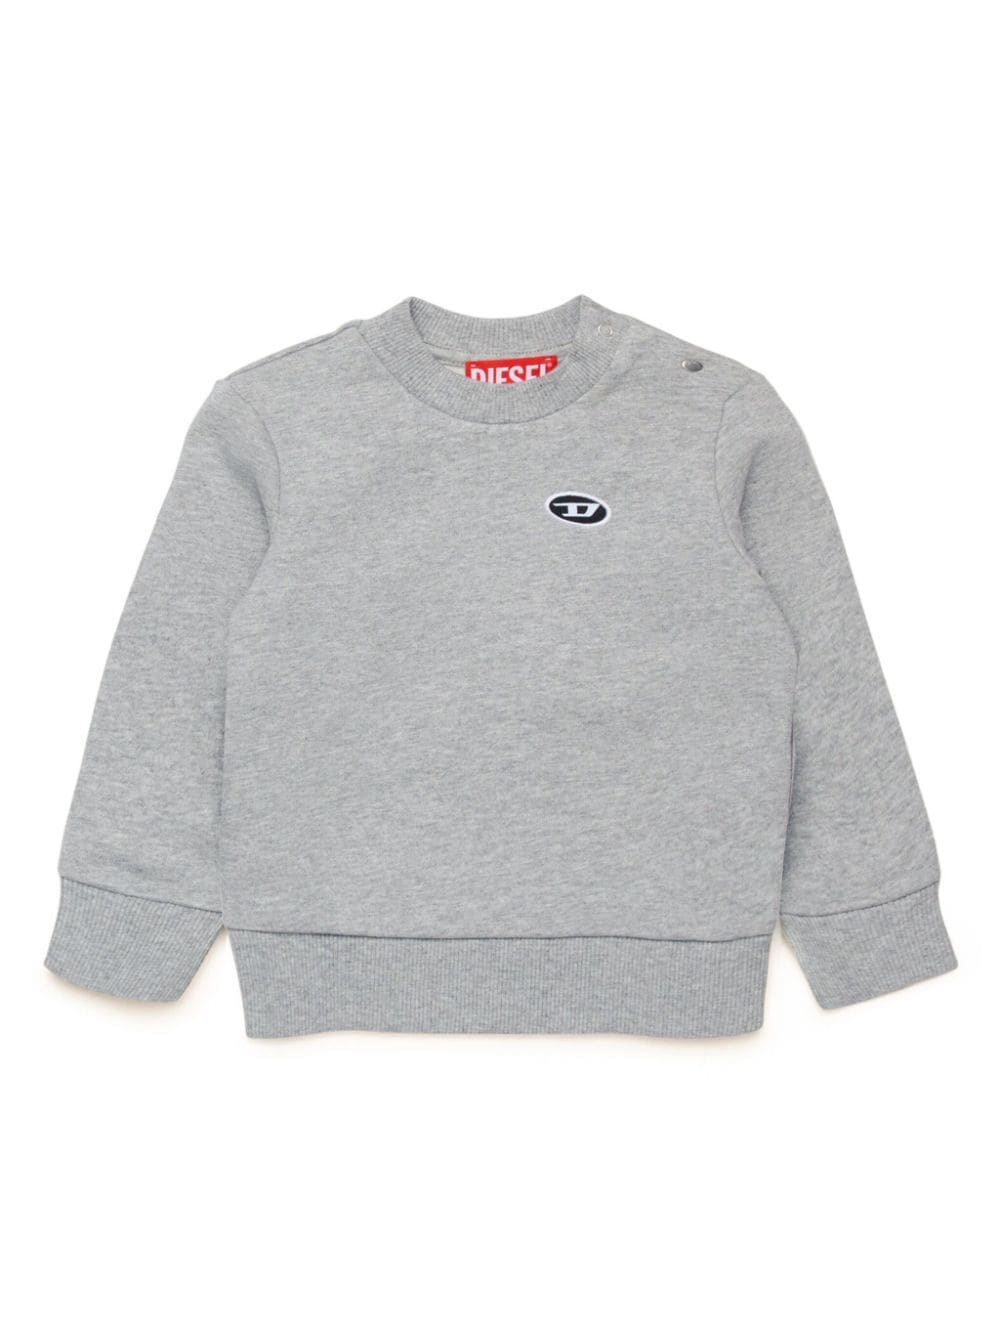 Diesel Kids logo-embroidered jumper - Grey von Diesel Kids